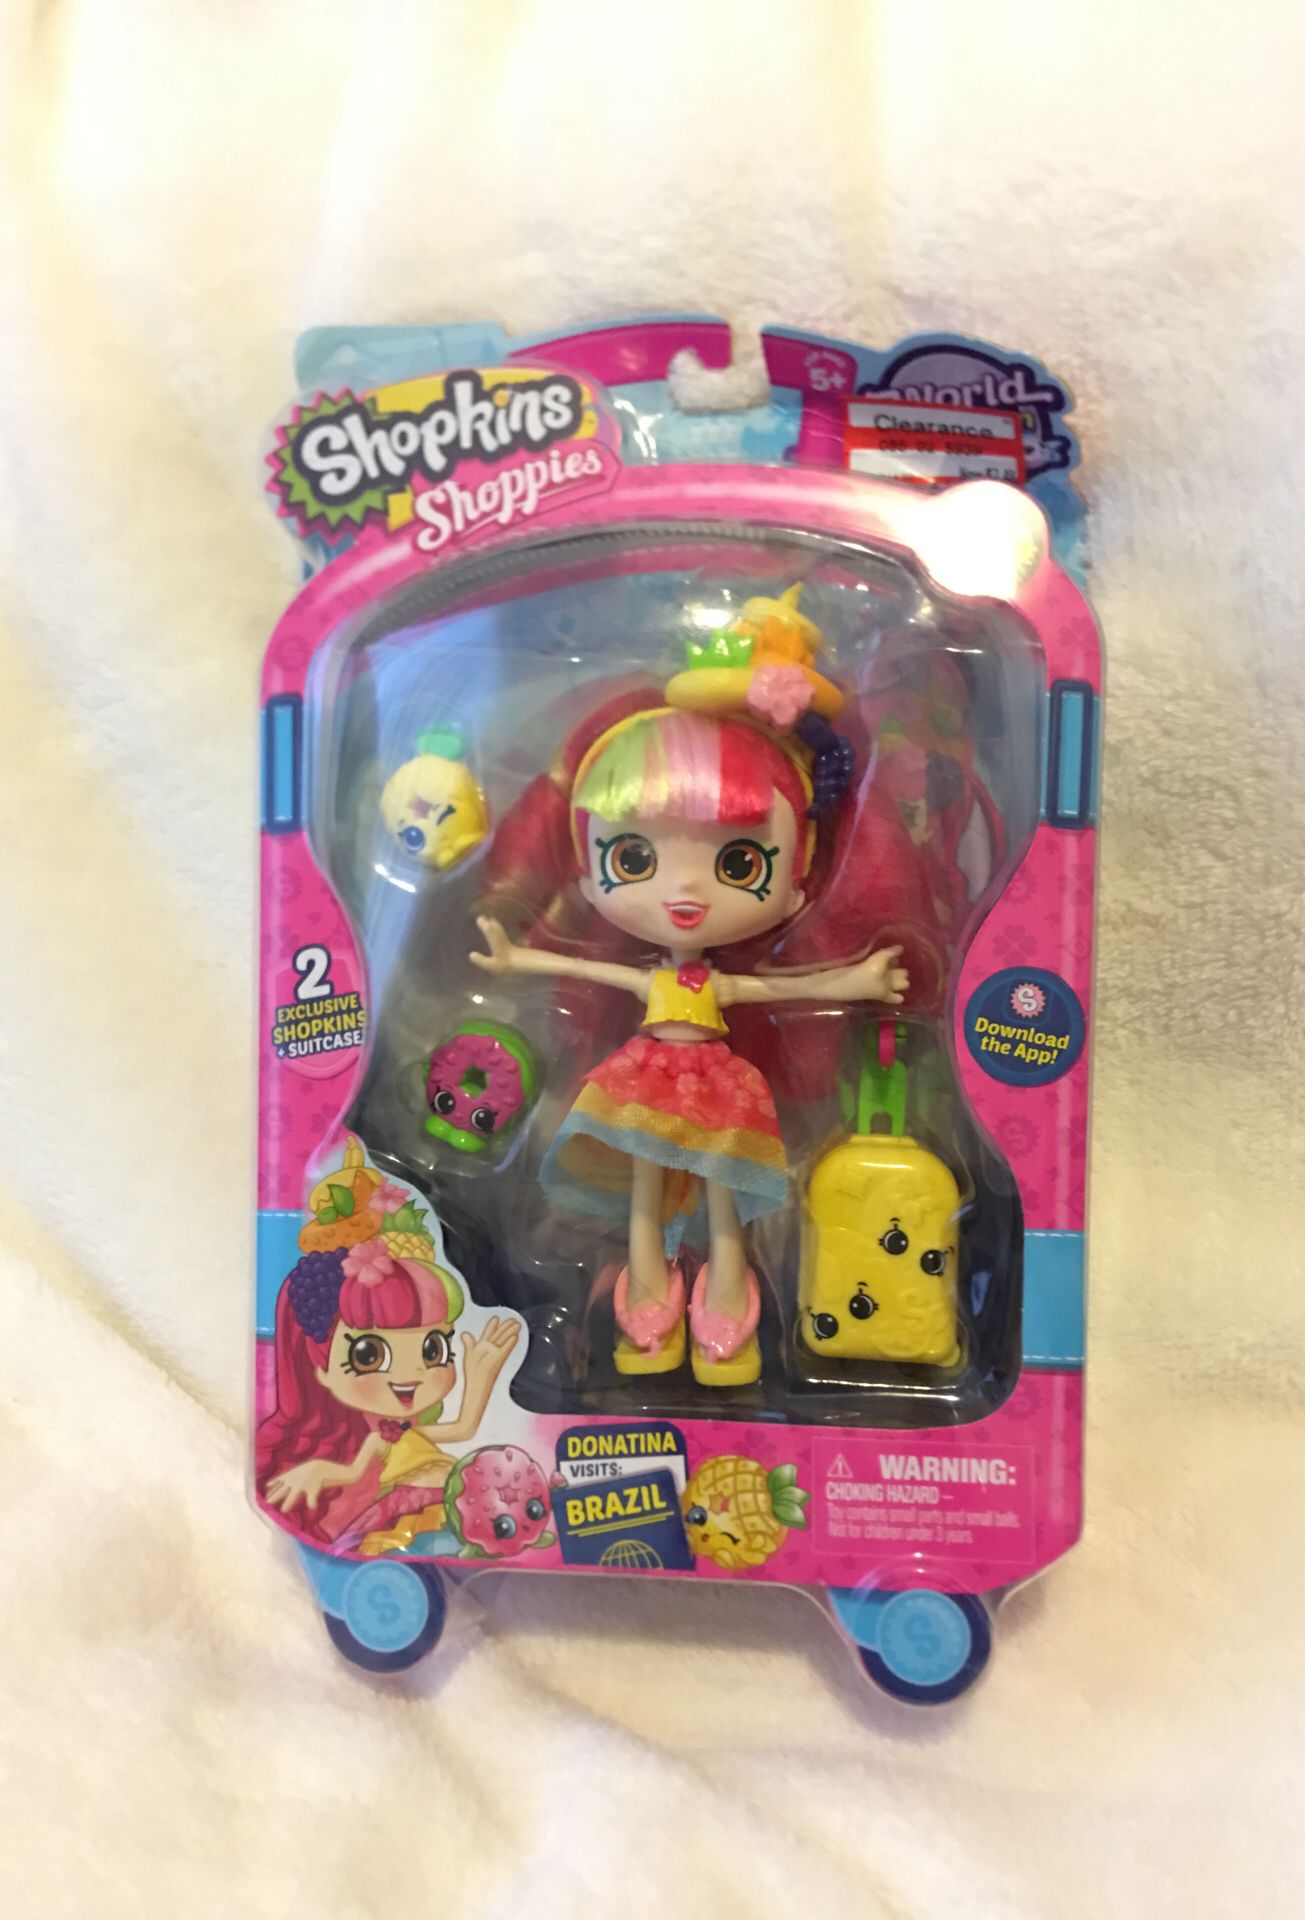 Brand new Shopkin shoppie doll